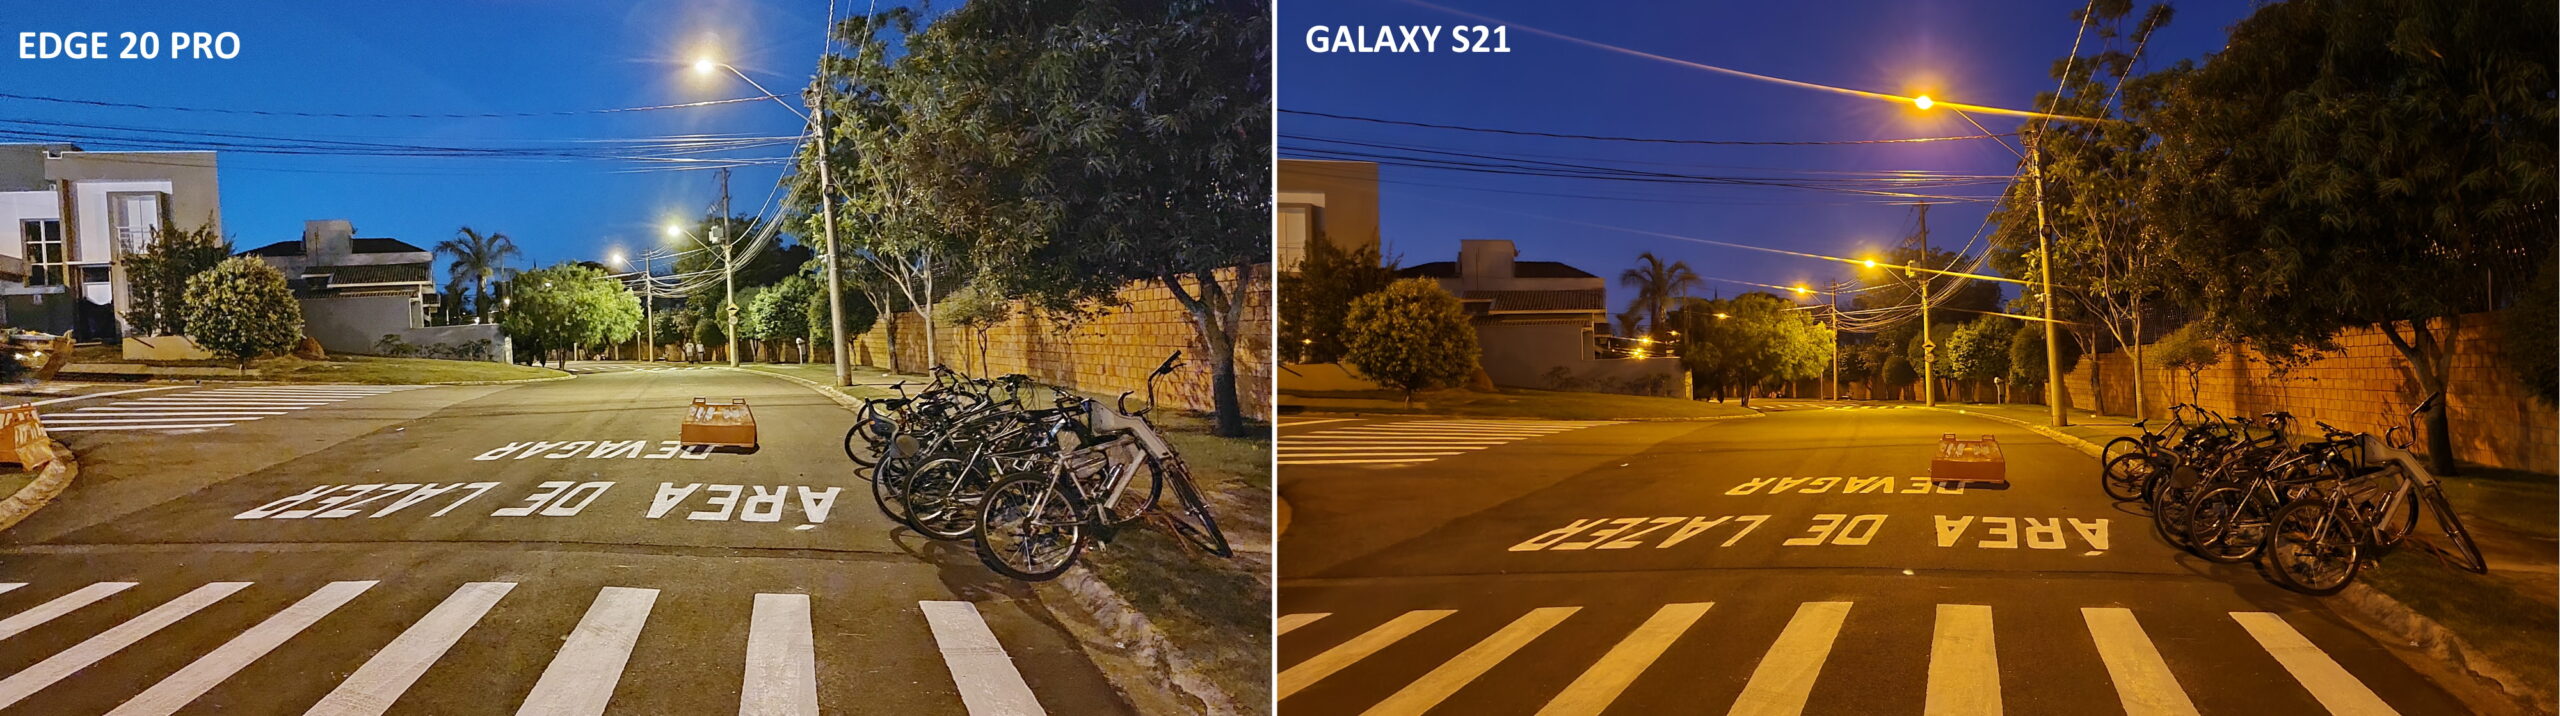 Foto tirada durante a noite comparando o Motorola Edge 20 pro com o Galaxy S21